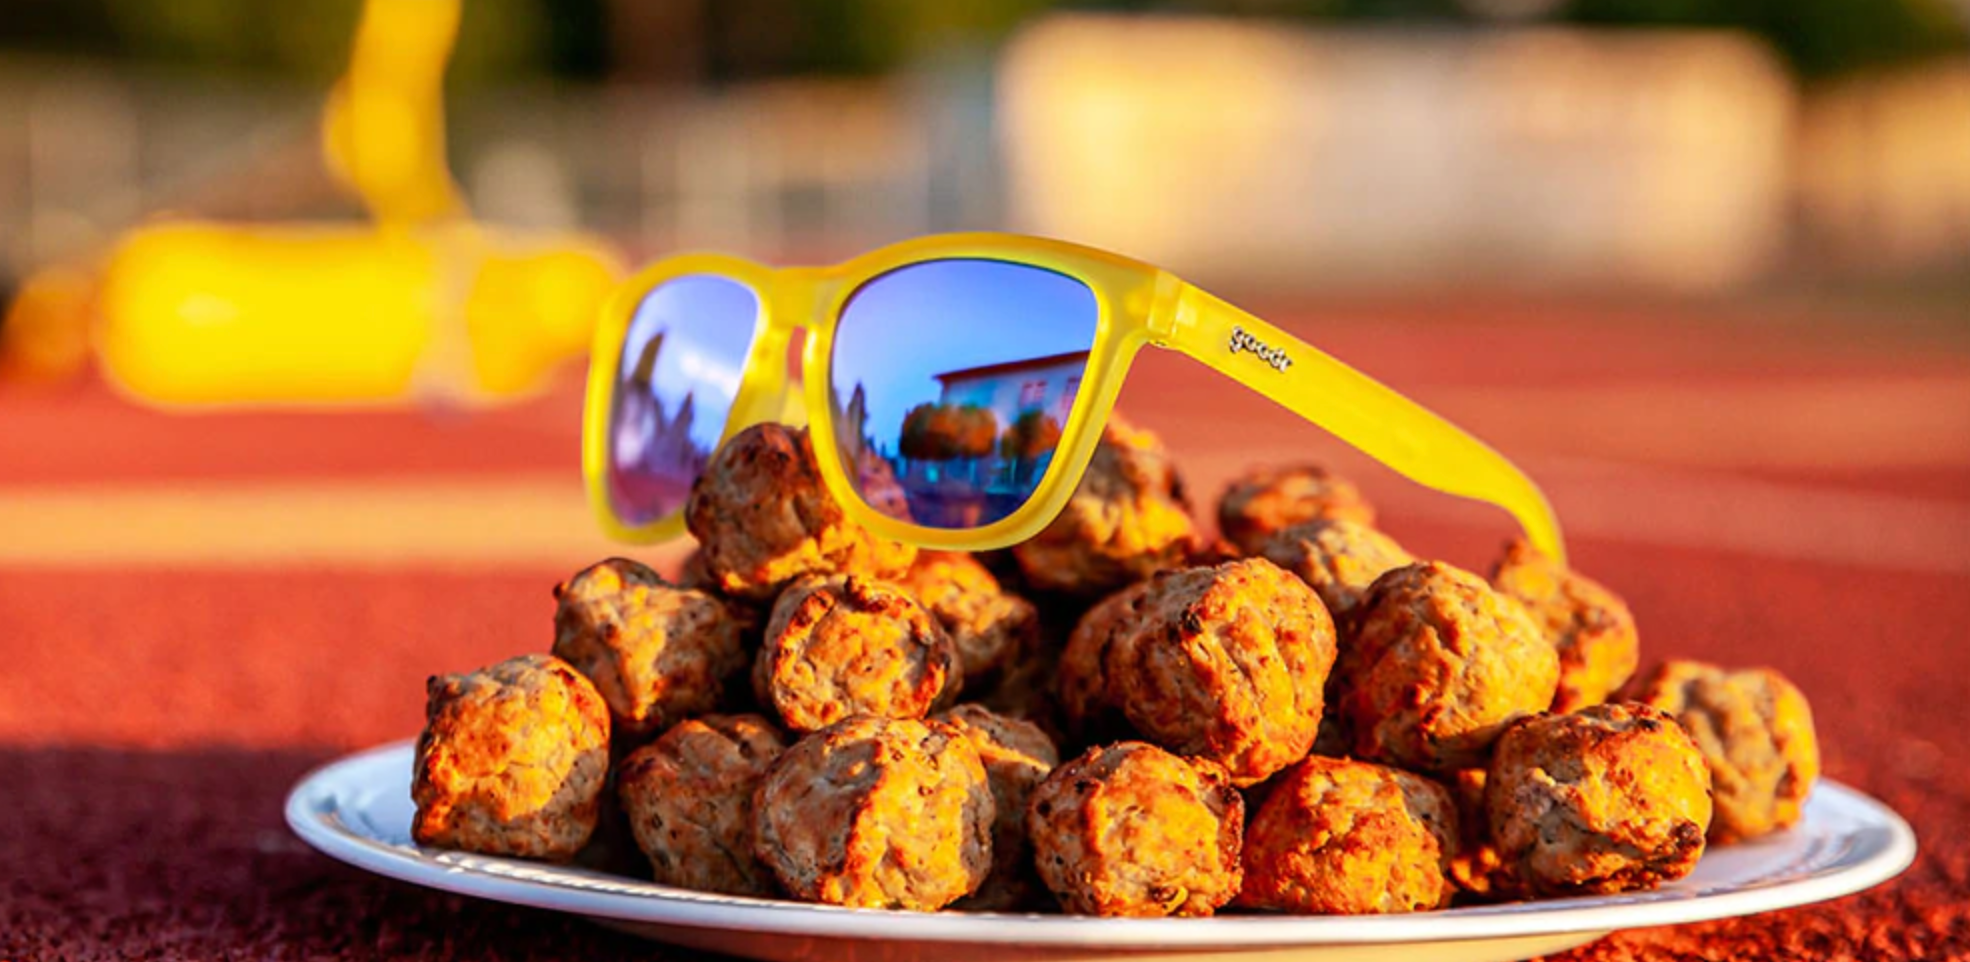 Swedish Meatball Hangover OG Sunglasses